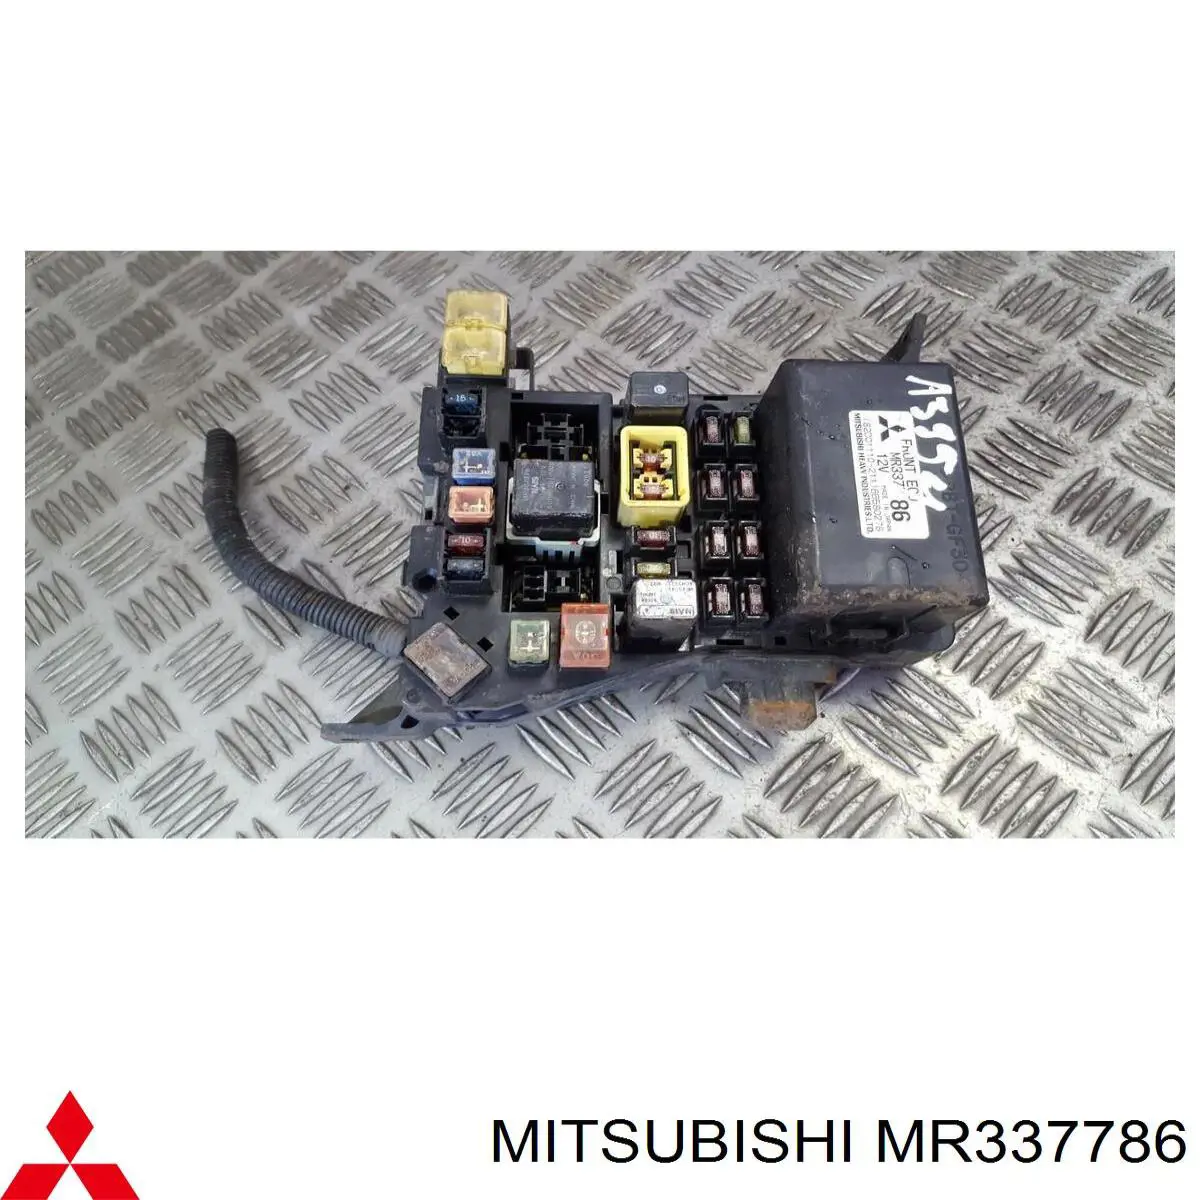 MR583210 Mitsubishi relé, faro